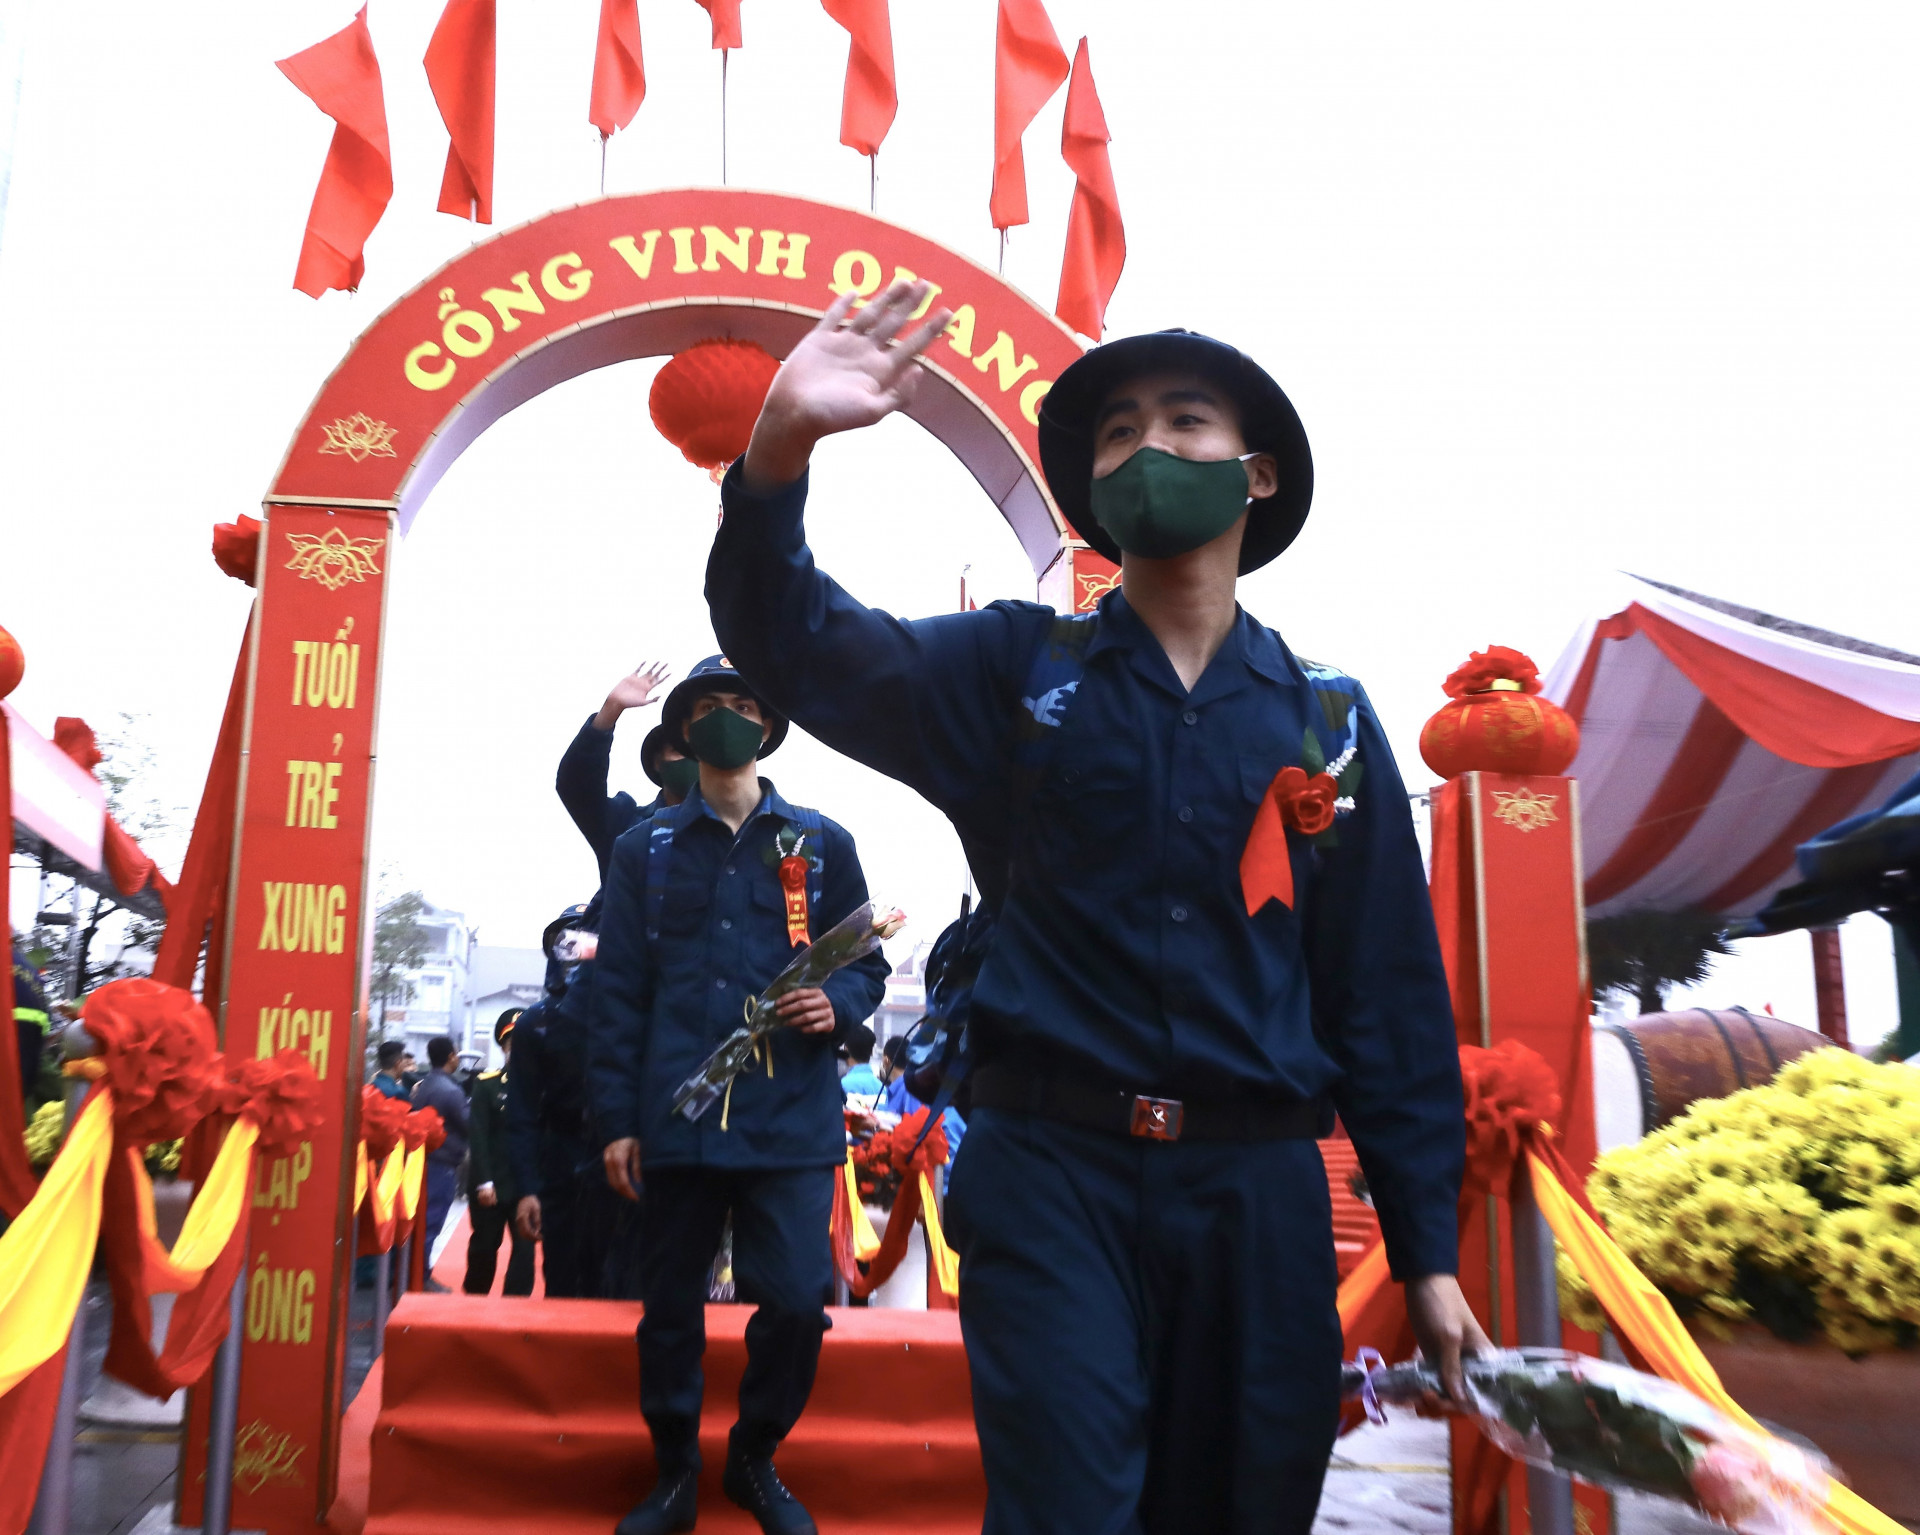 Thanh niên huyện Đông Anh, Hà Nội chia tay người thân lên đường thực hiện nghĩa vụ quân sự_Ảnh: TTXVN

